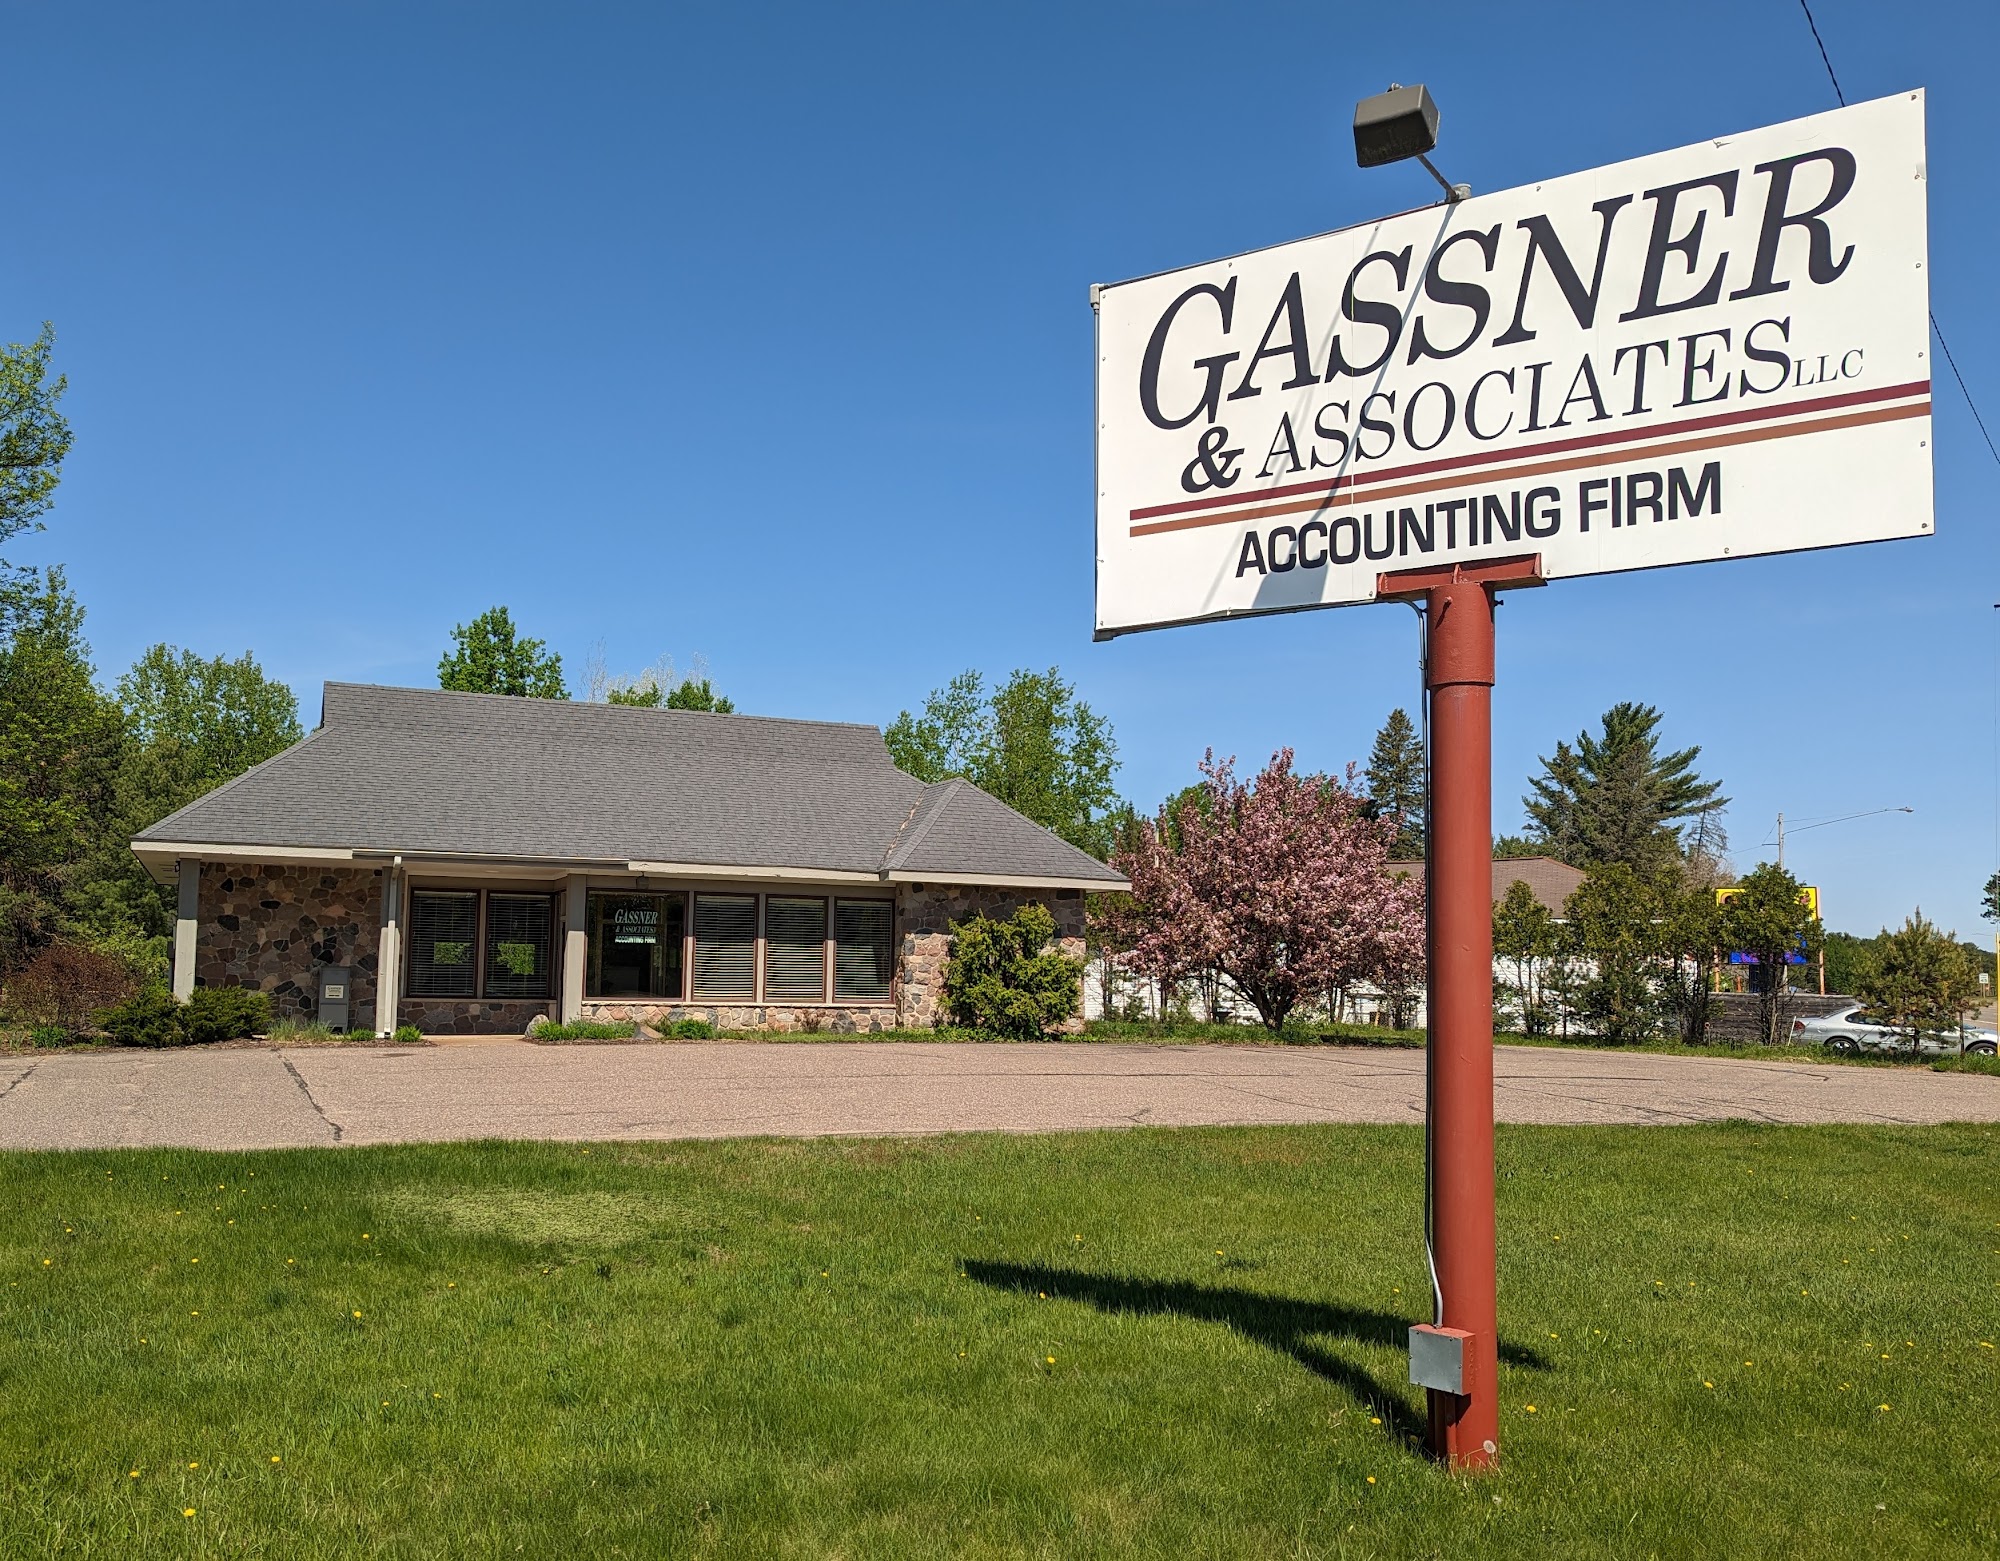 Gassner & Associates LLC 7005 US-51, Hazelhurst Wisconsin 54531